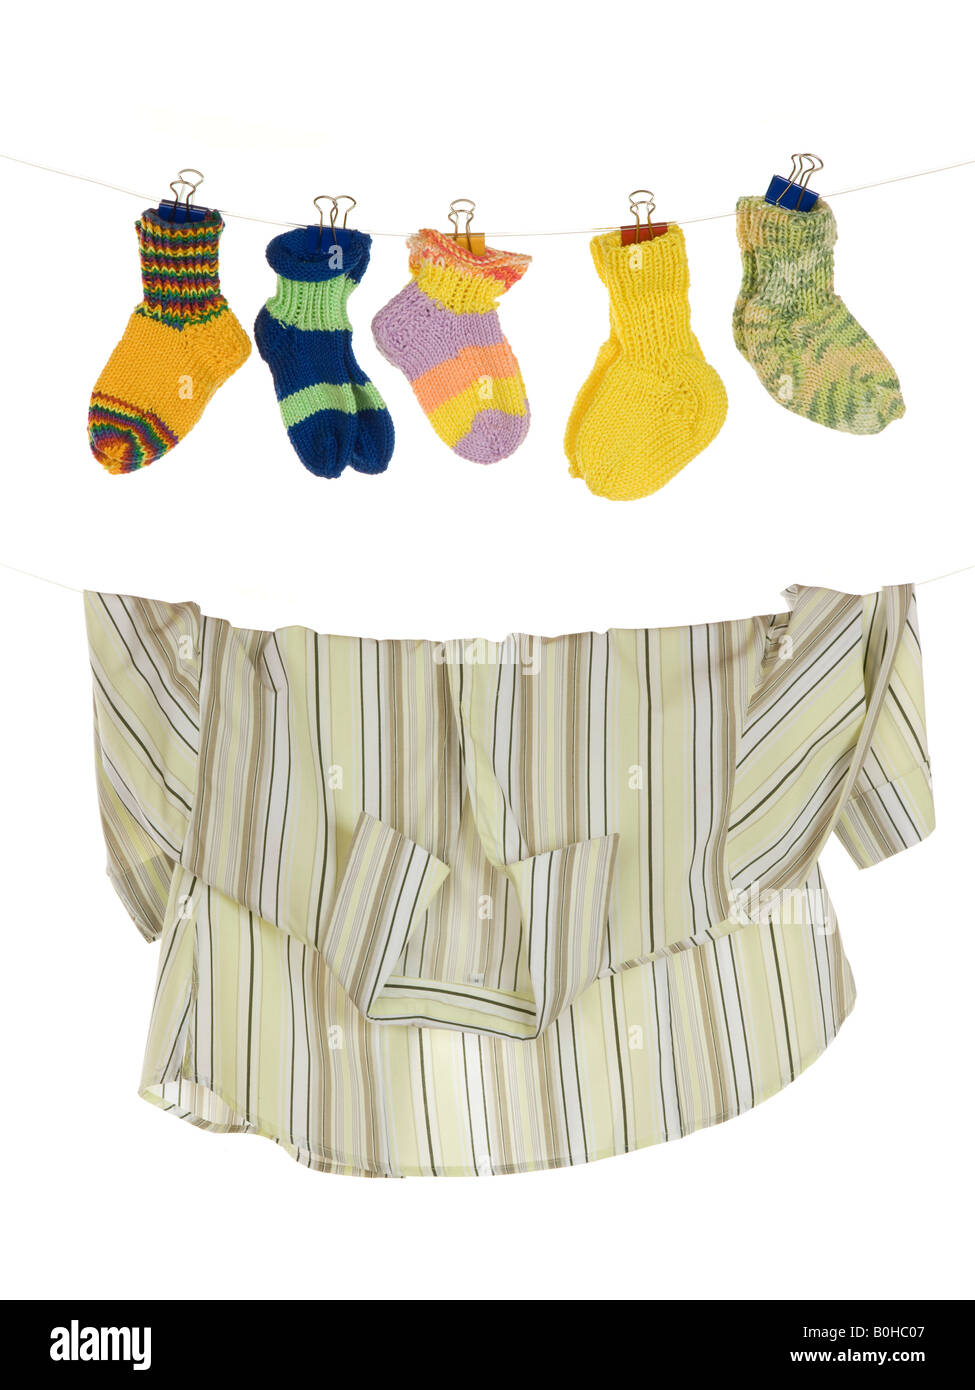 Baby-Socken und Bluse hängen von einer Wäscheleine, symbolisches Bild: Kind oder Karriere, Kinder und Karriere Stockfoto